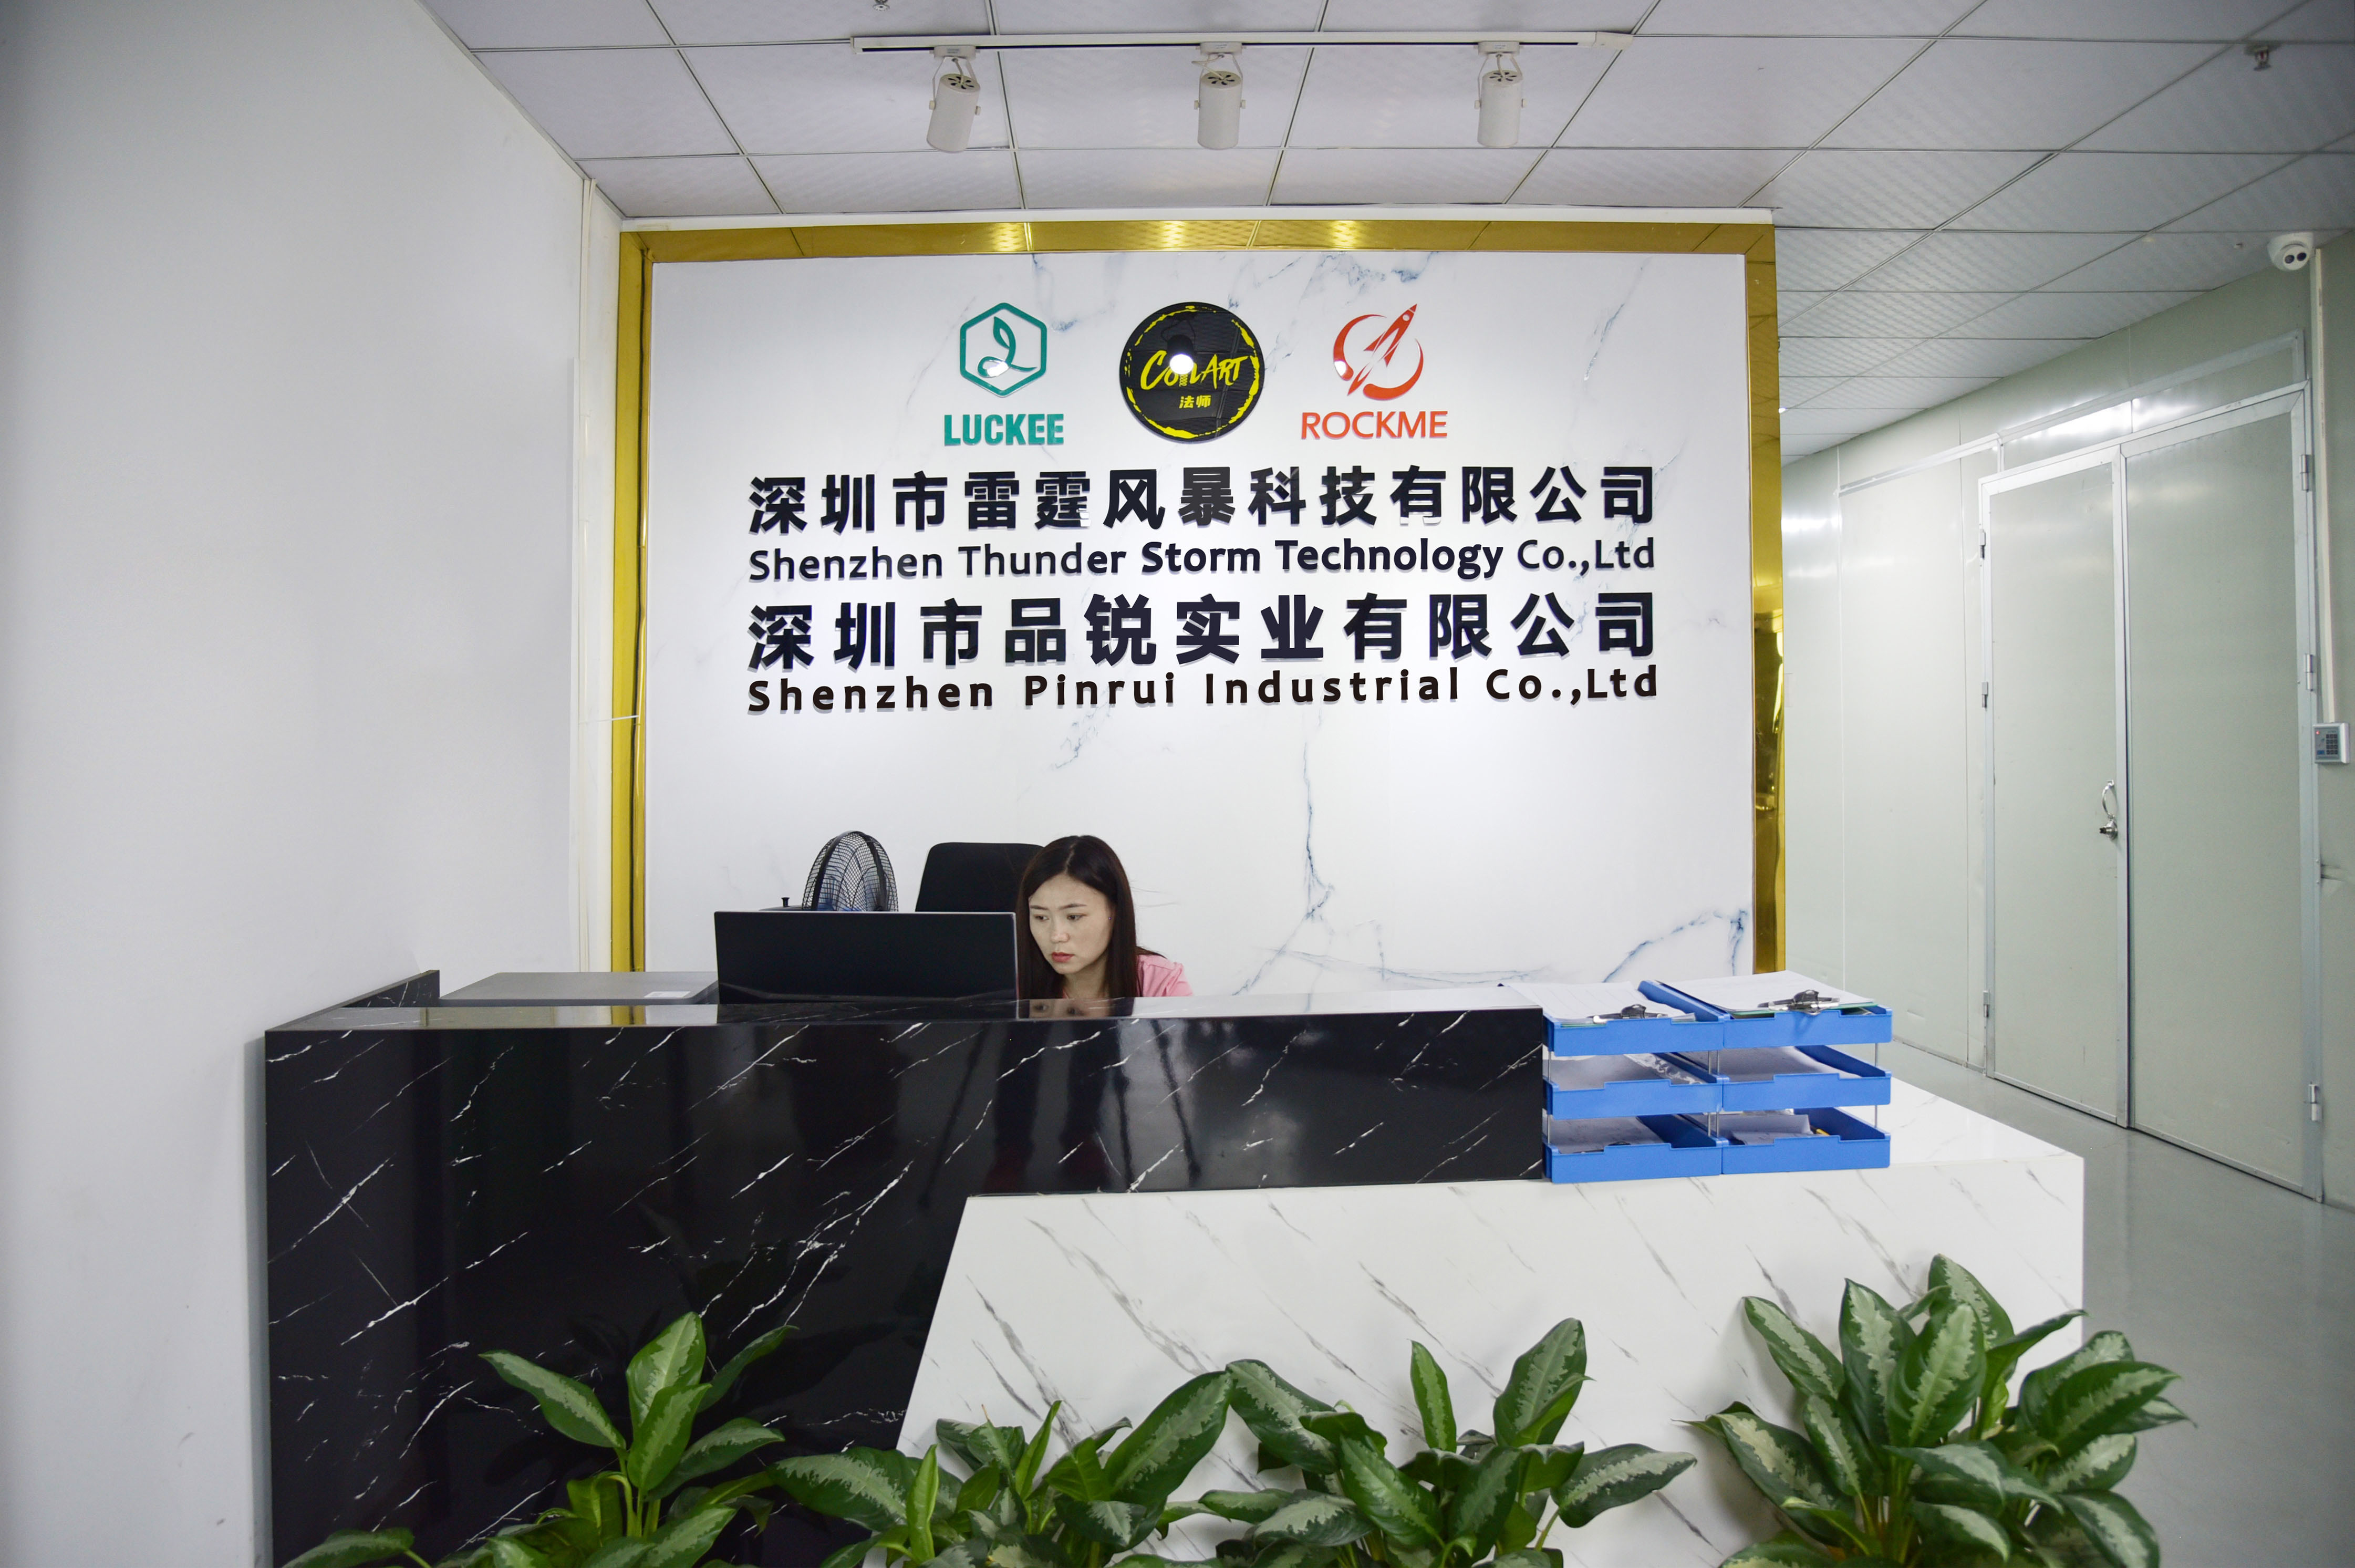 Shenzhen Pinrui Industrial Co.,Ltd